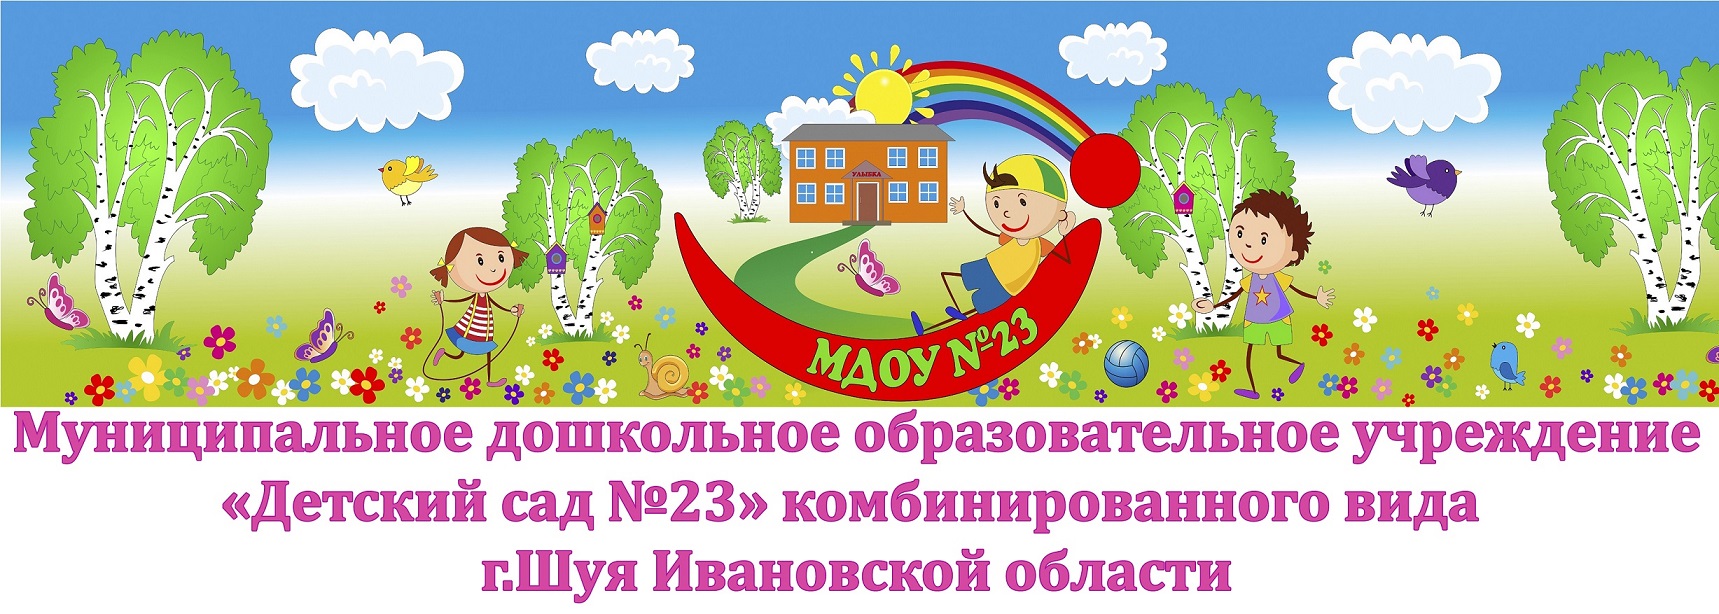 Муниципальное дошкольное образовательное учреждение "Детский сад №23" комбинированного вида г.Шуя ивановской области